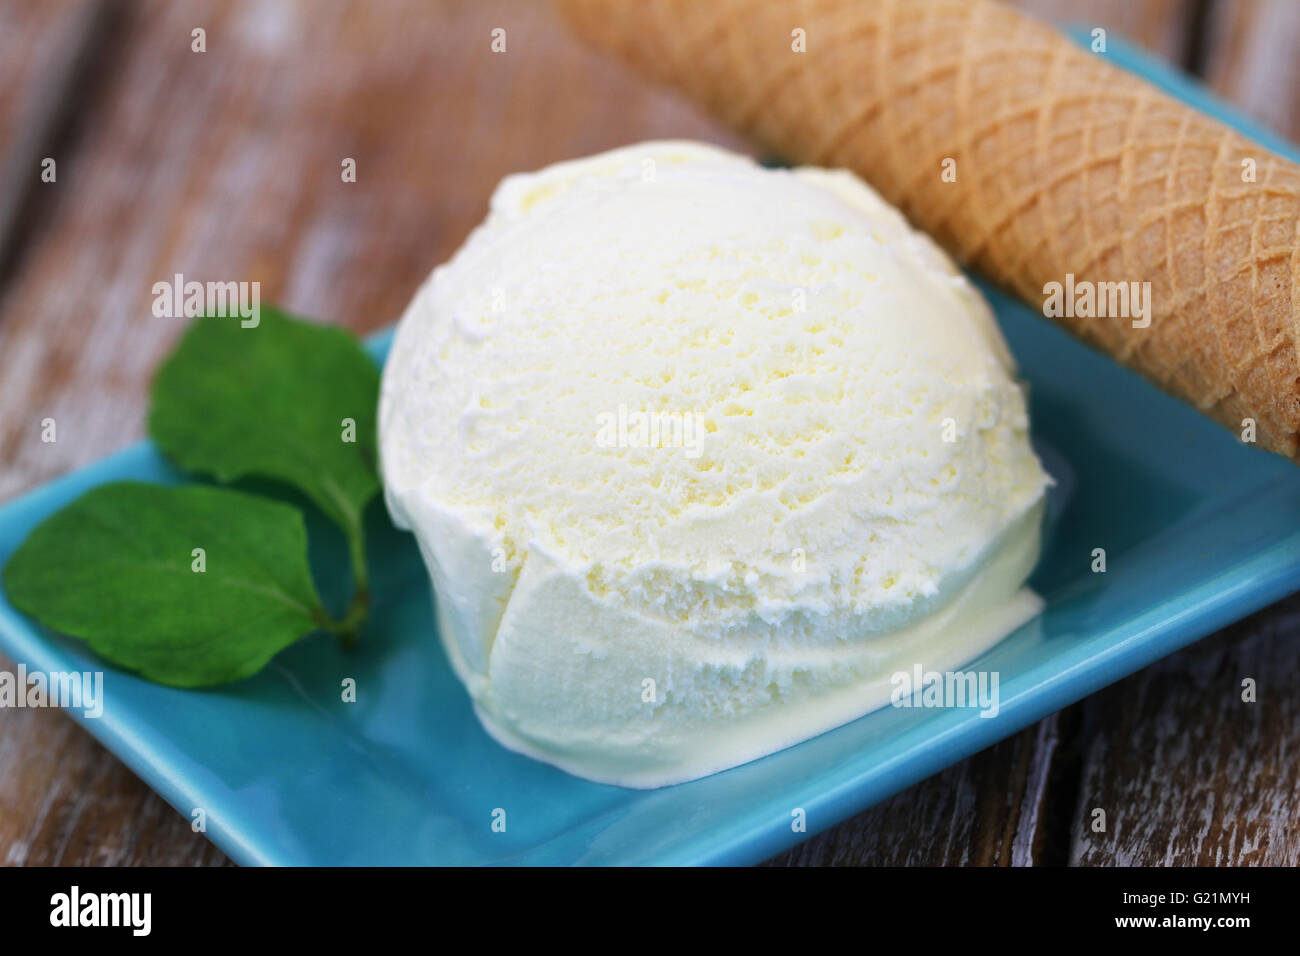 Pallina di gelato alla vaniglia e il wafer sul rustico superficie in legno Foto Stock